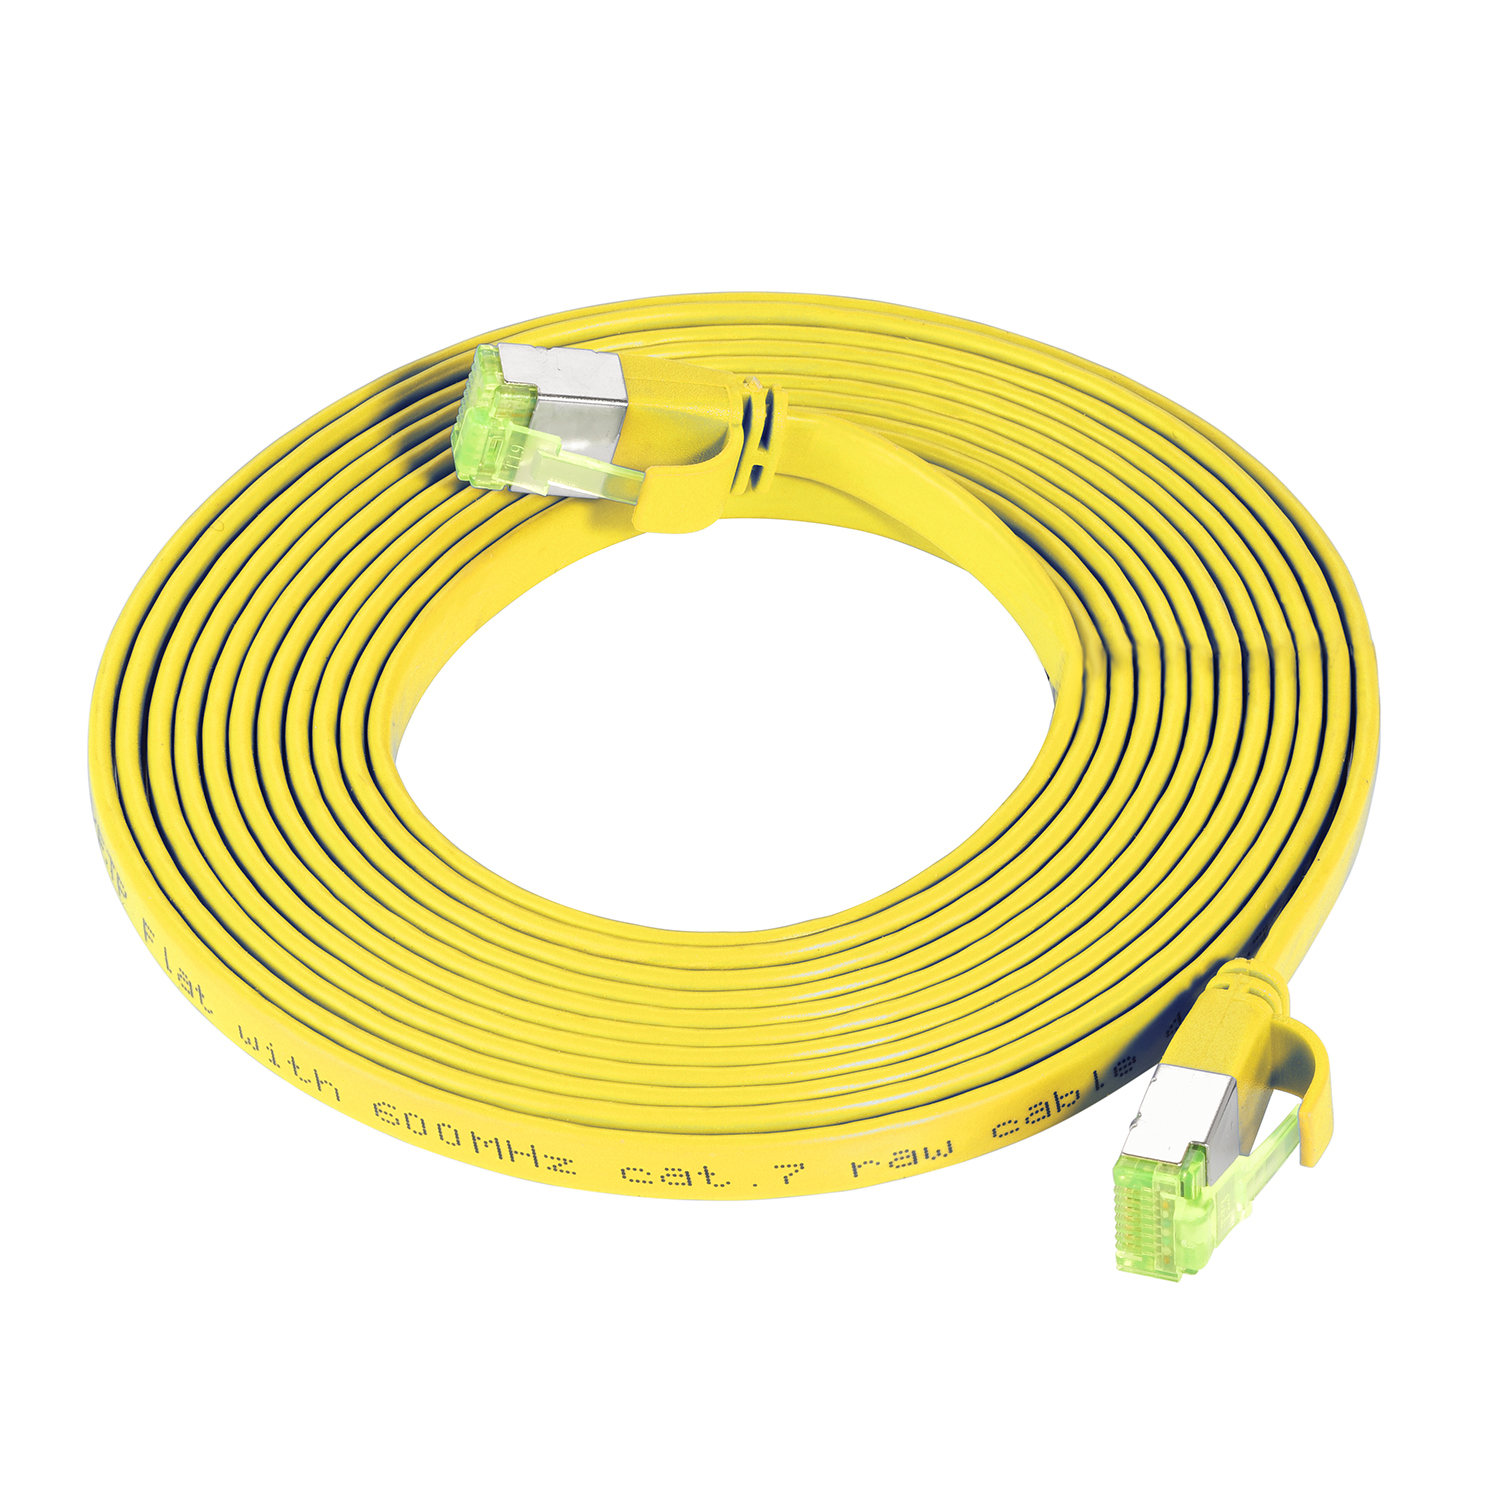 Patchkabel 2m gelb, TPFNET m Flachkabel U/FTP Netzwerkkabel, 2 GBit, 10 /